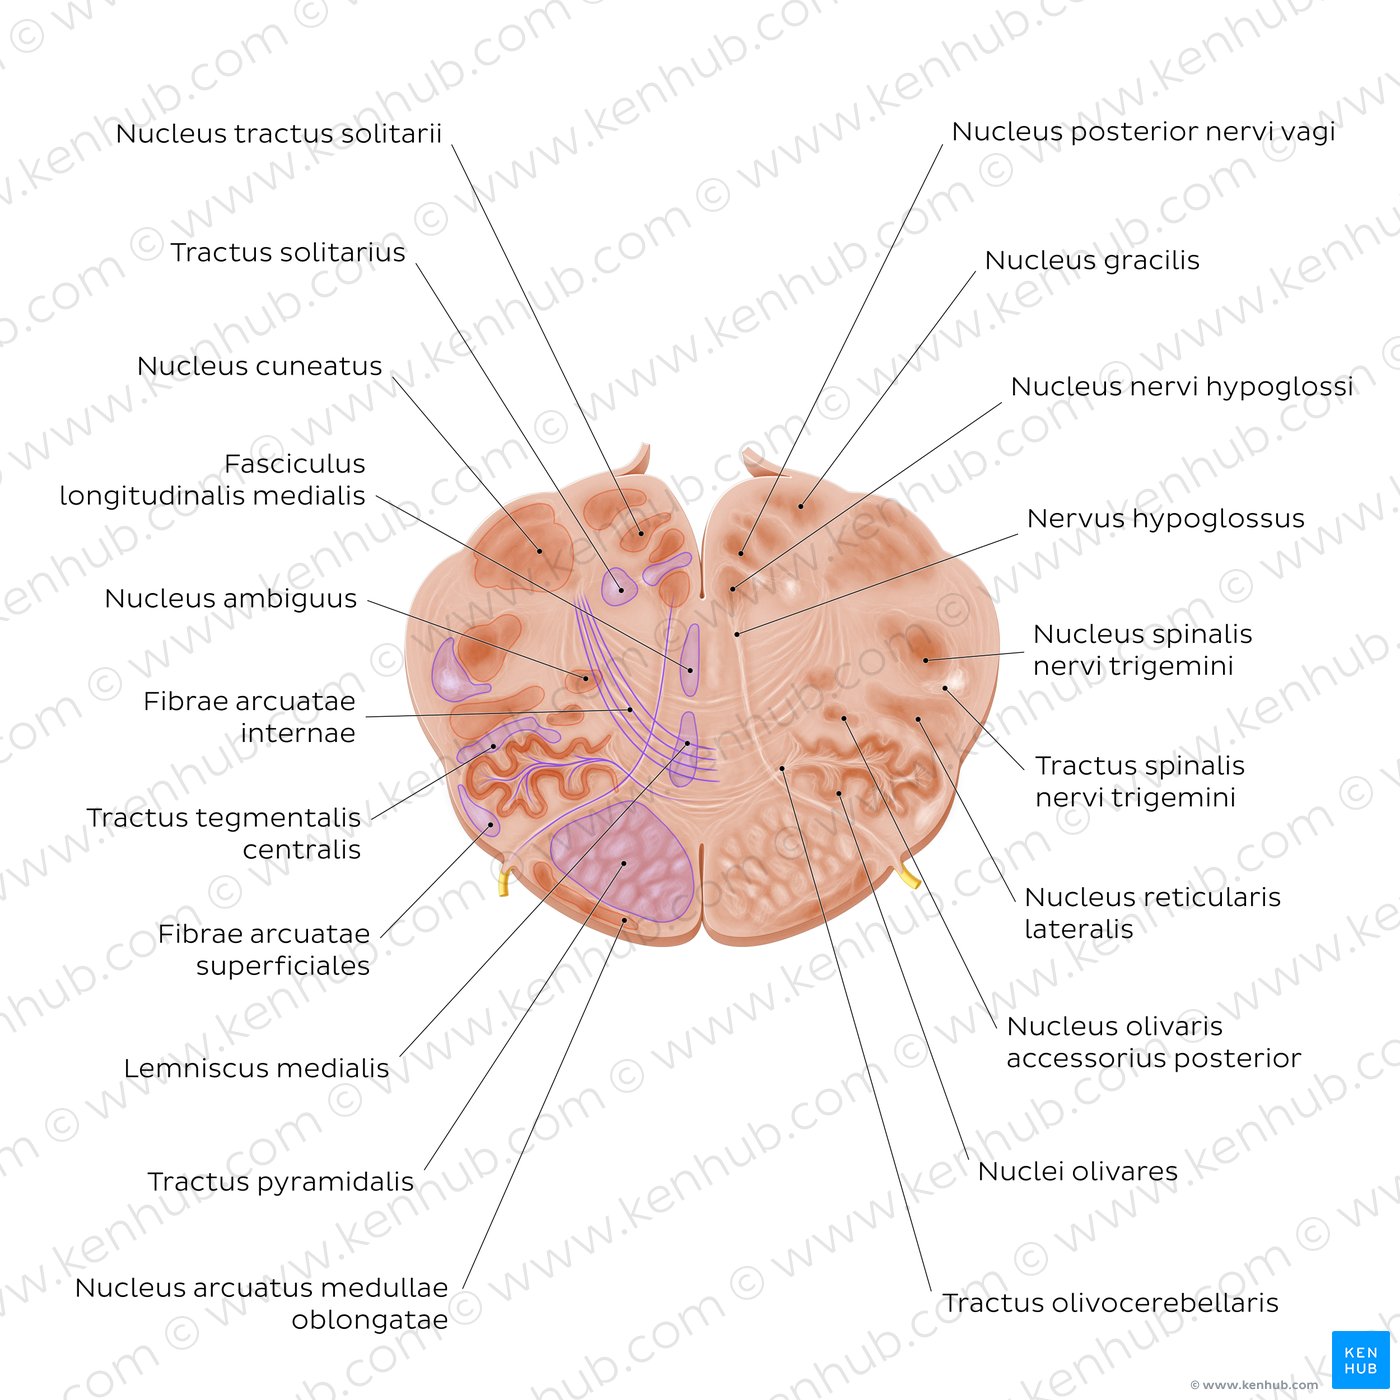 Cross section of the medulla oblongata: Hypoglossal nerve level